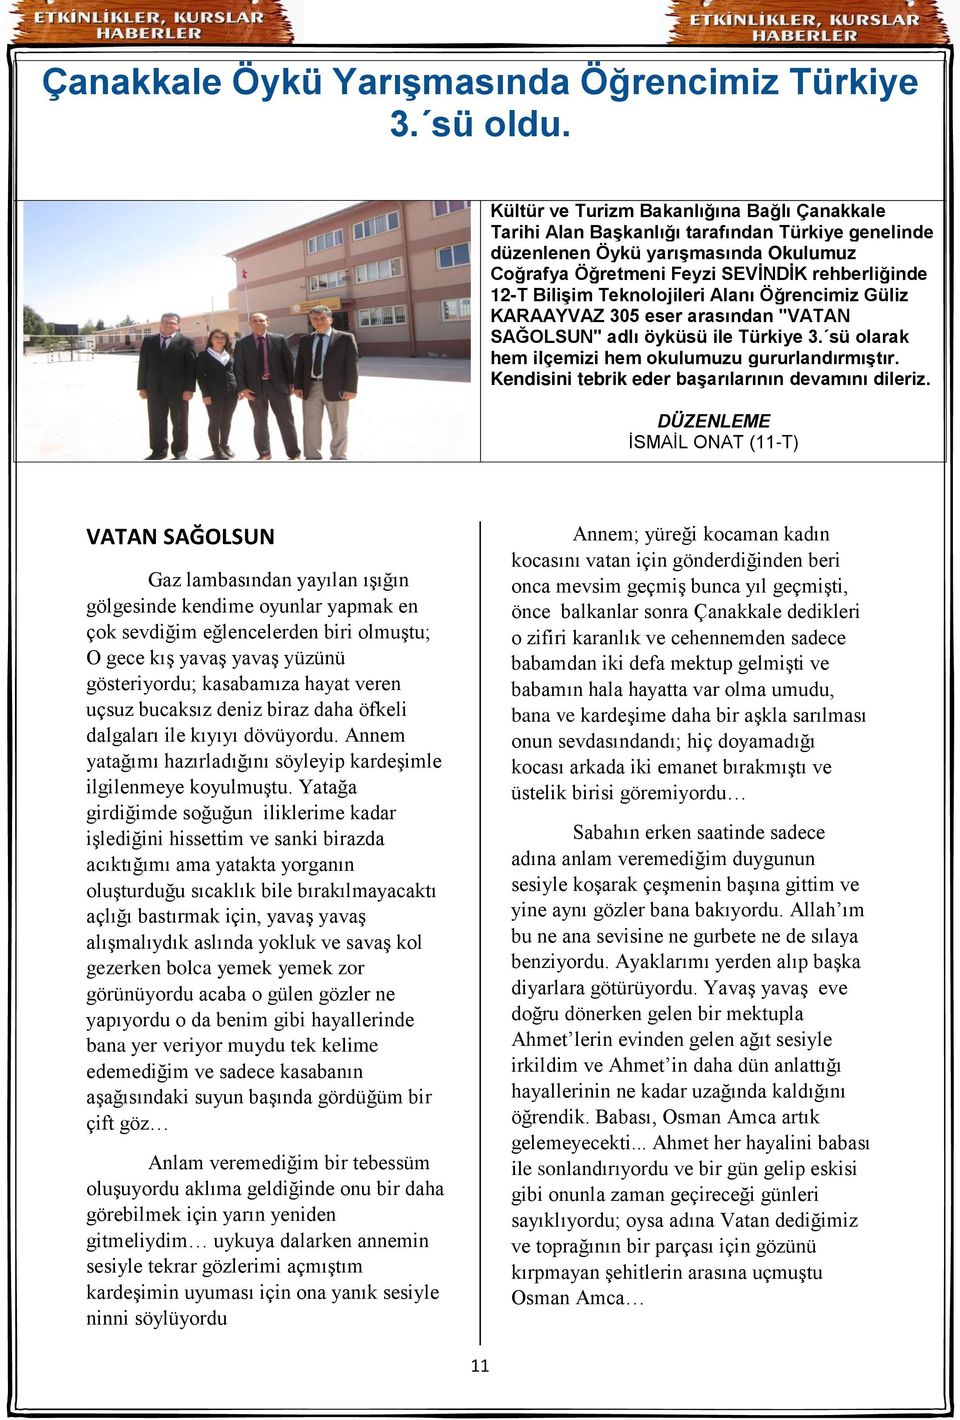 Teknolojileri Alanı Öğrencimiz Güliz KARAAYVAZ 305 eser arasından "VATAN SAĞOLSUN" adlı öyküsü ile Türkiye 3. sü olarak hem ilçemizi hem okulumuzu gururlandırmıştır.